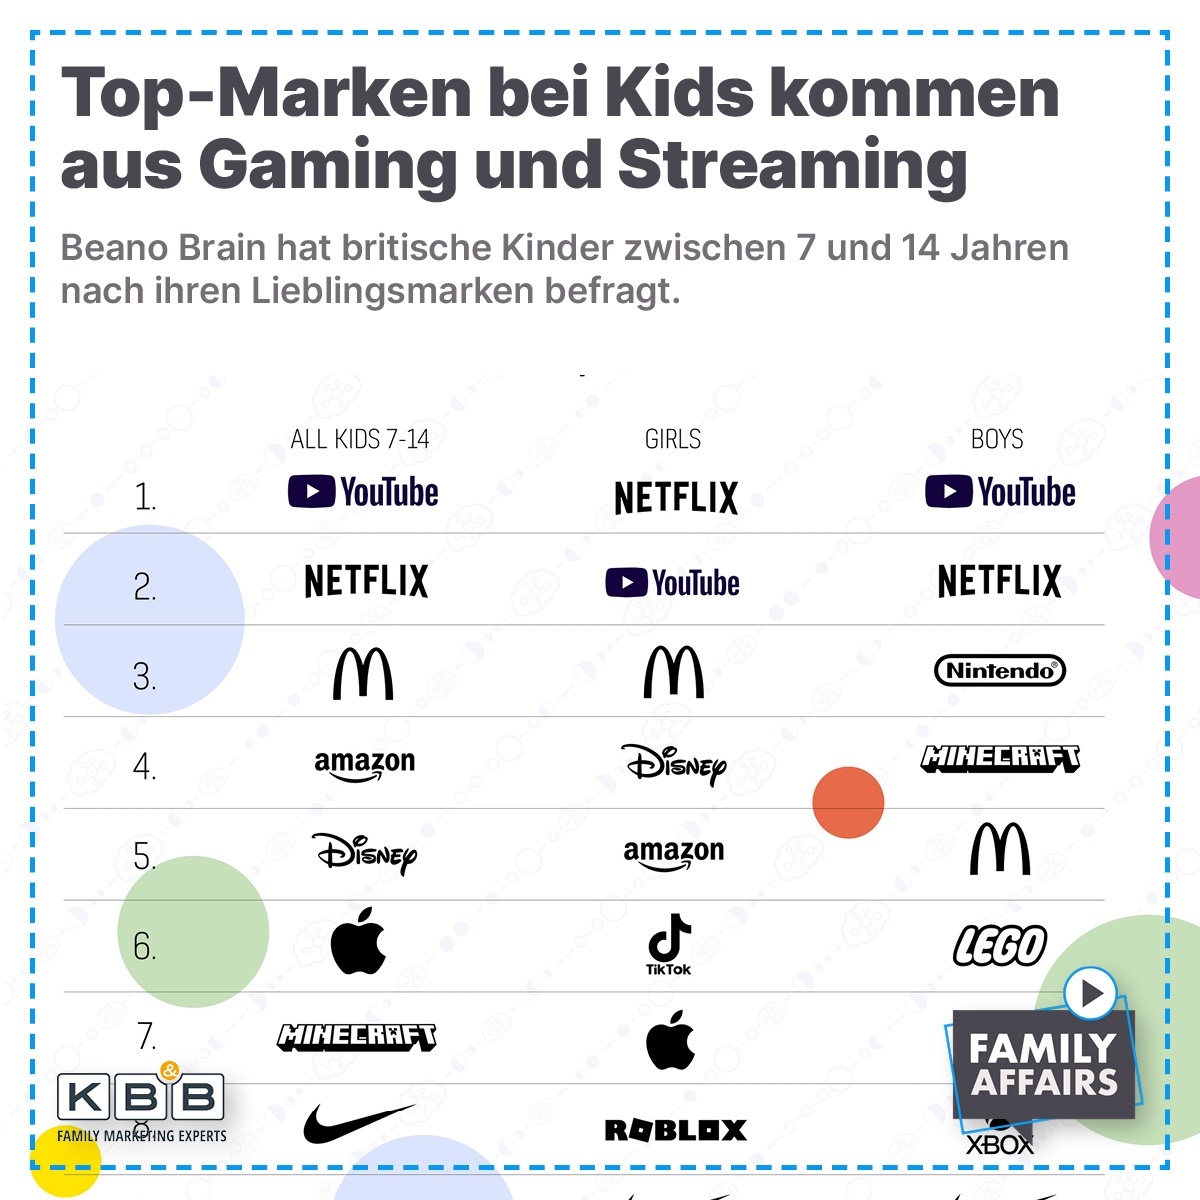 📊 Top-Marken bei Kids kommen aus Gaming und Streaming

Beano Brain hat britische Kinder zwischen 7 und 14 Jahren nach ihren Lieblingsmarken befragt. Die Top 10 werden insgesamt von Marken aus den Bereichen Videospiele und Streaming dominiert.

beanobrain.com/post/we-reveal…